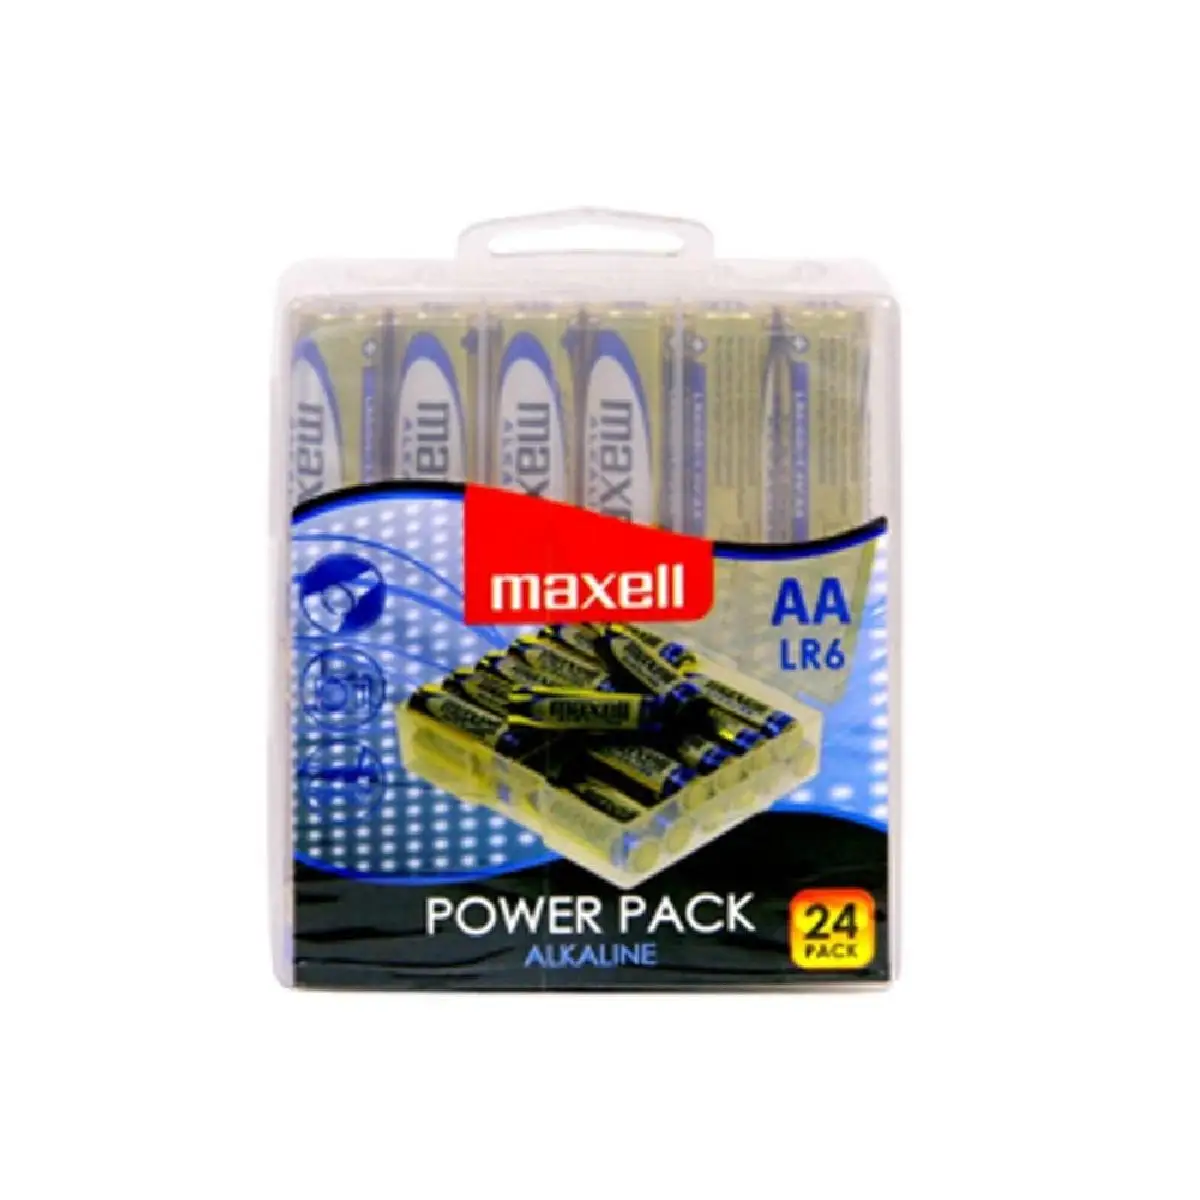 

Pilas Maxell bateria original Alcalina Tipo AA LR6 en blister 24X Unidades